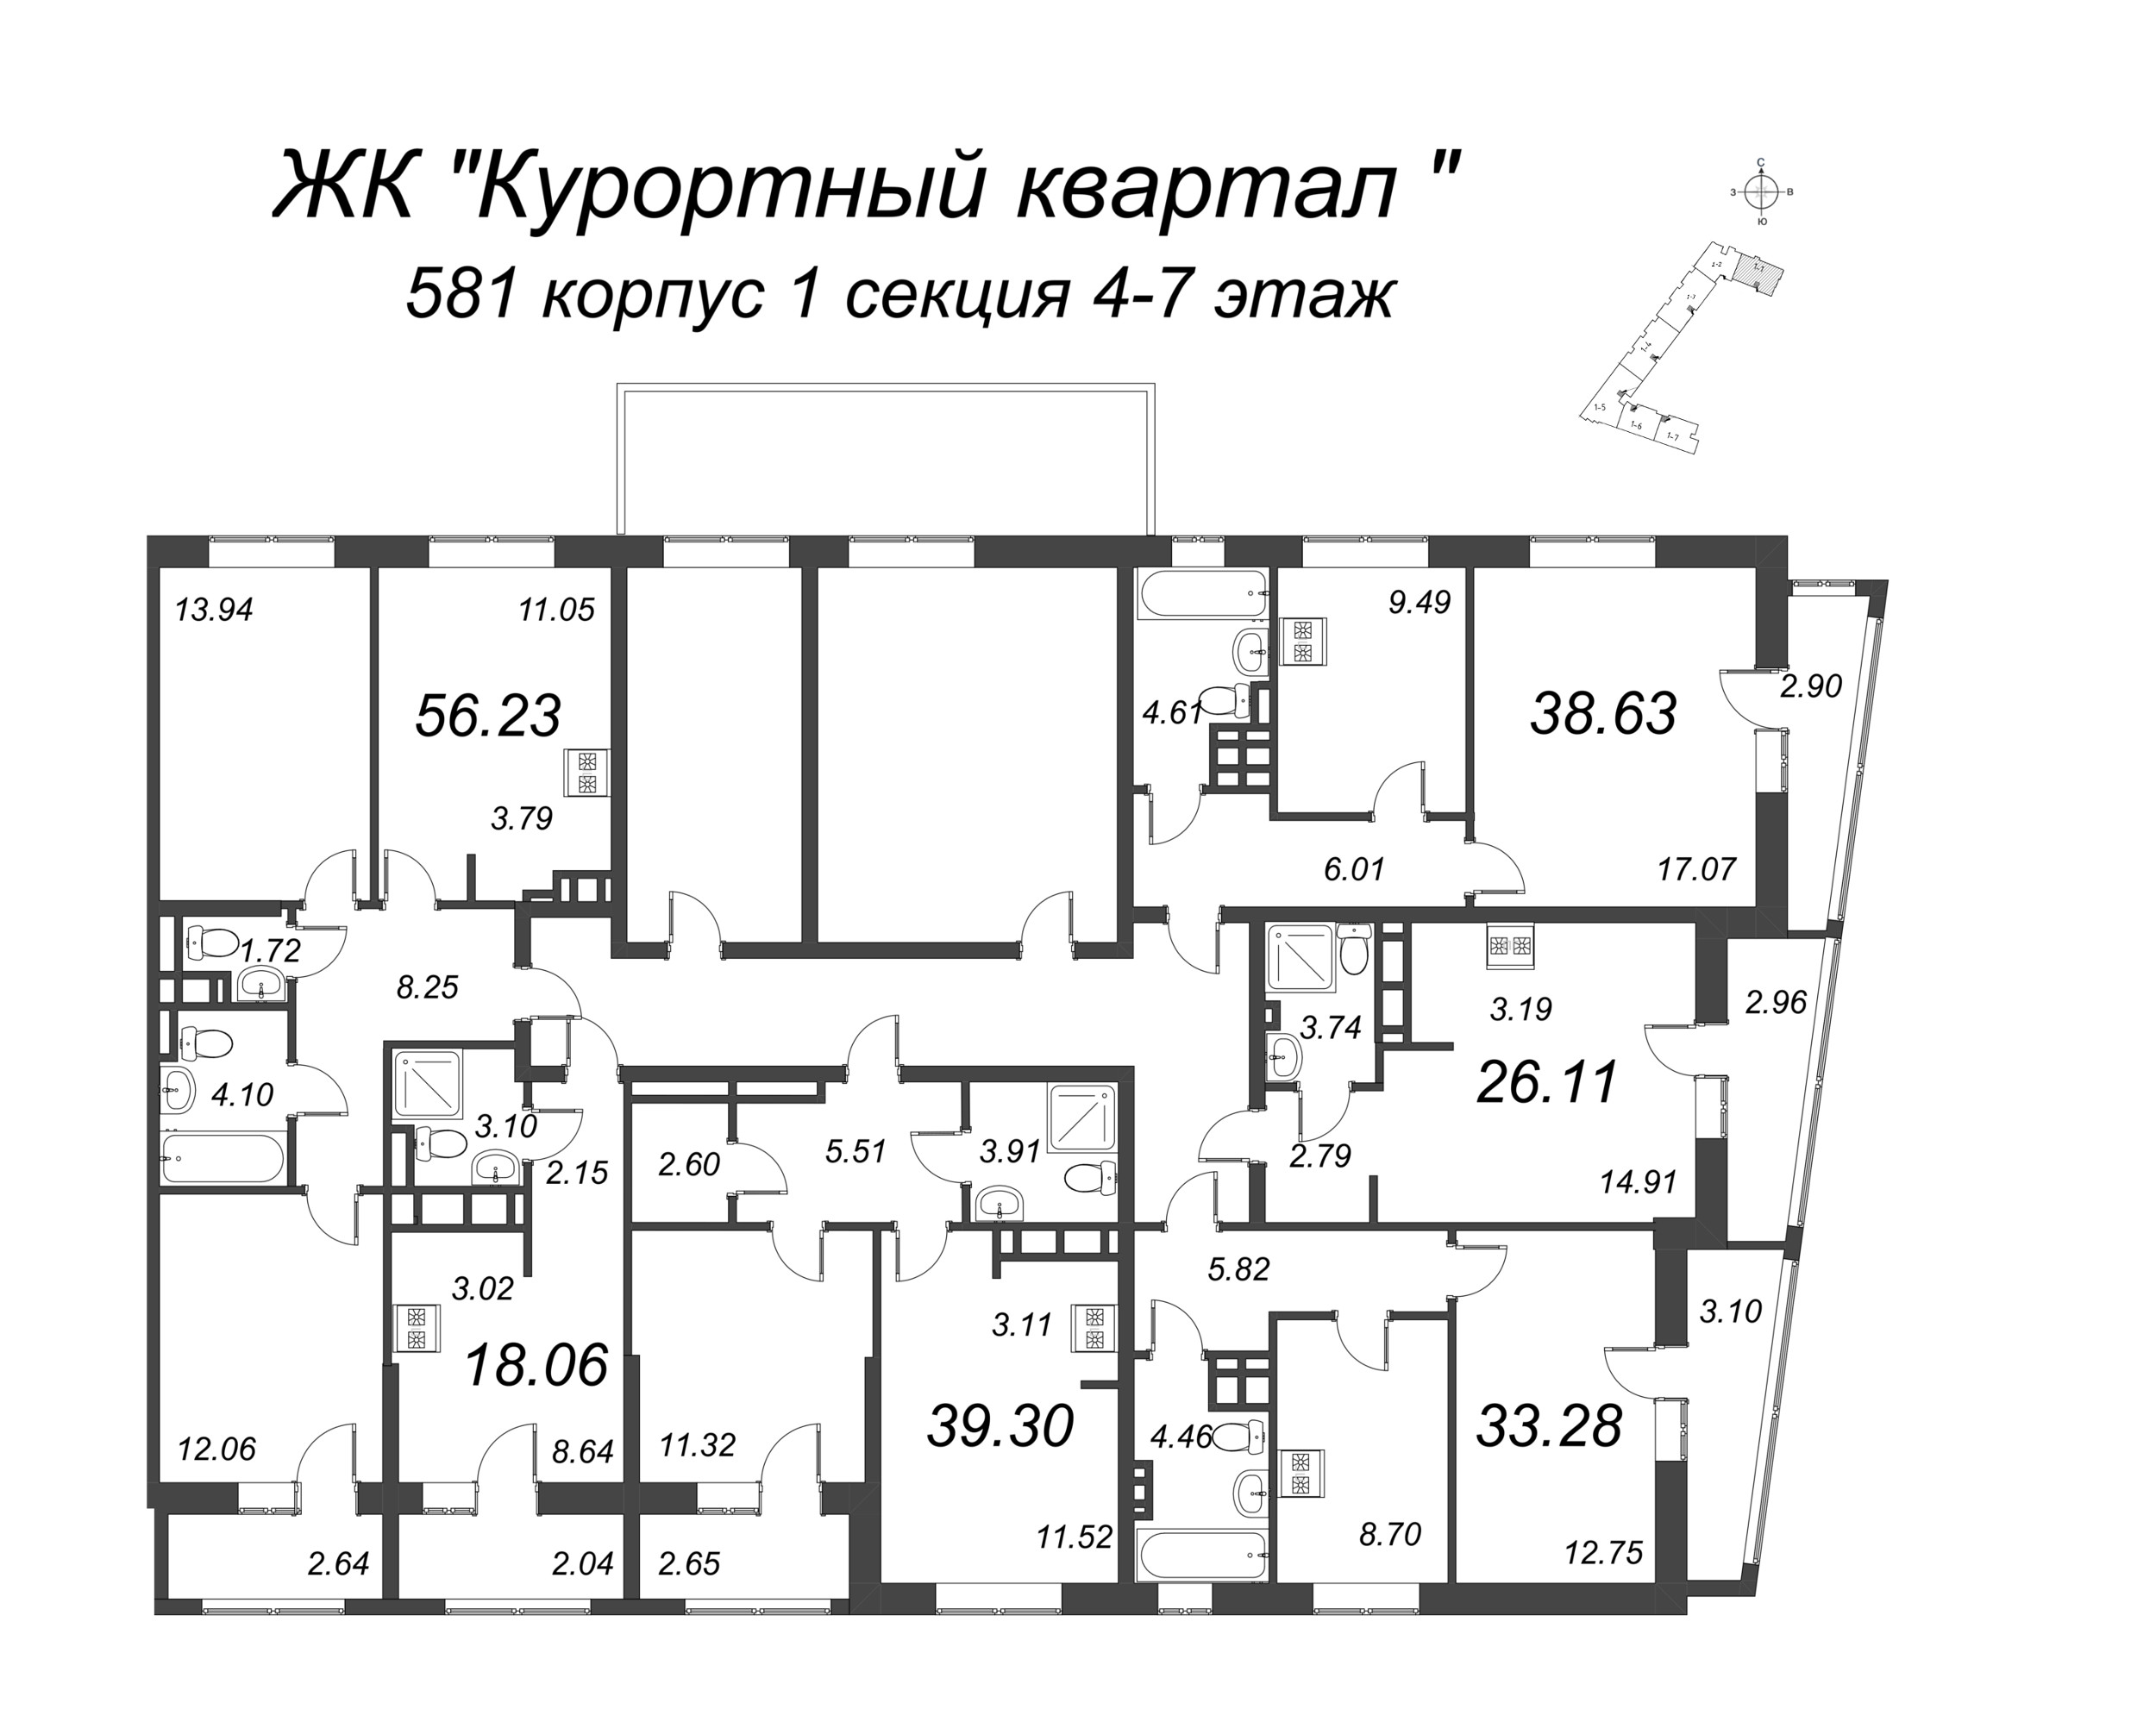 Квартира-студия, 18.06 м² в ЖК "Курортный Квартал" - планировка этажа